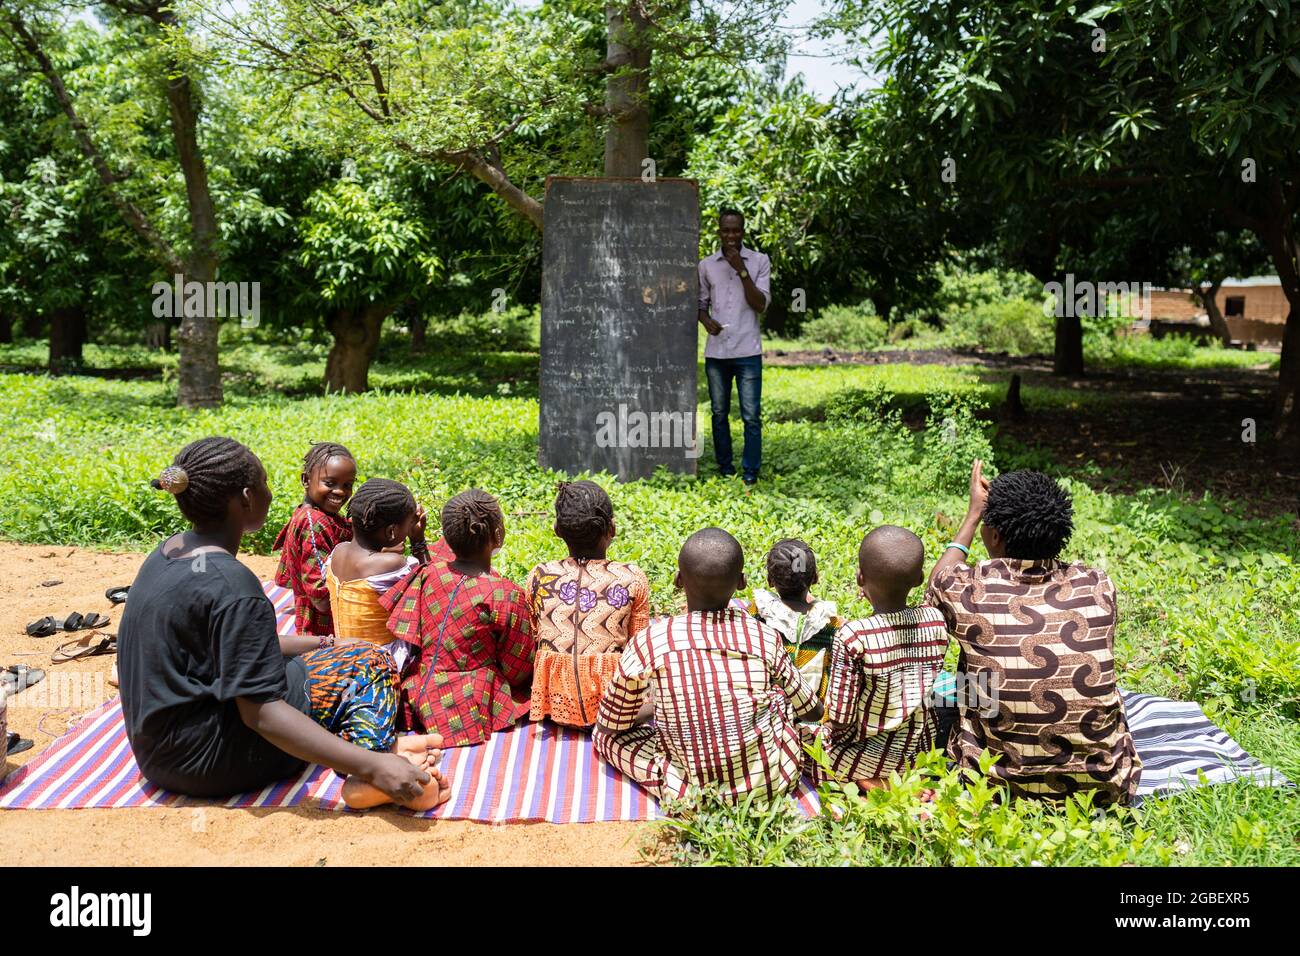 Dans cette image, un groupe d'enfants assis sur un tapis écoute leur enseignant dans une classe en plein air dans une pauvre école de village africain Banque D'Images